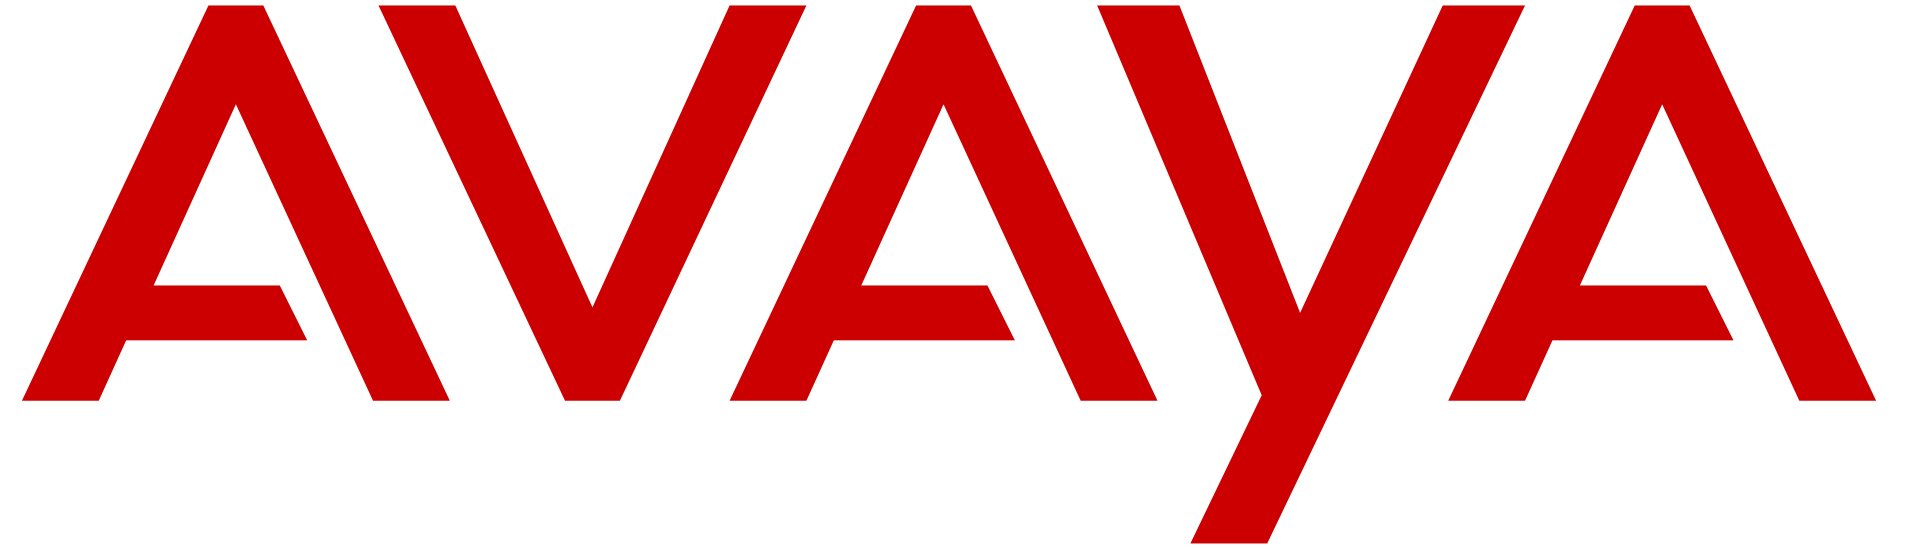 Avaya CIS - Авайя Россия и СНГ